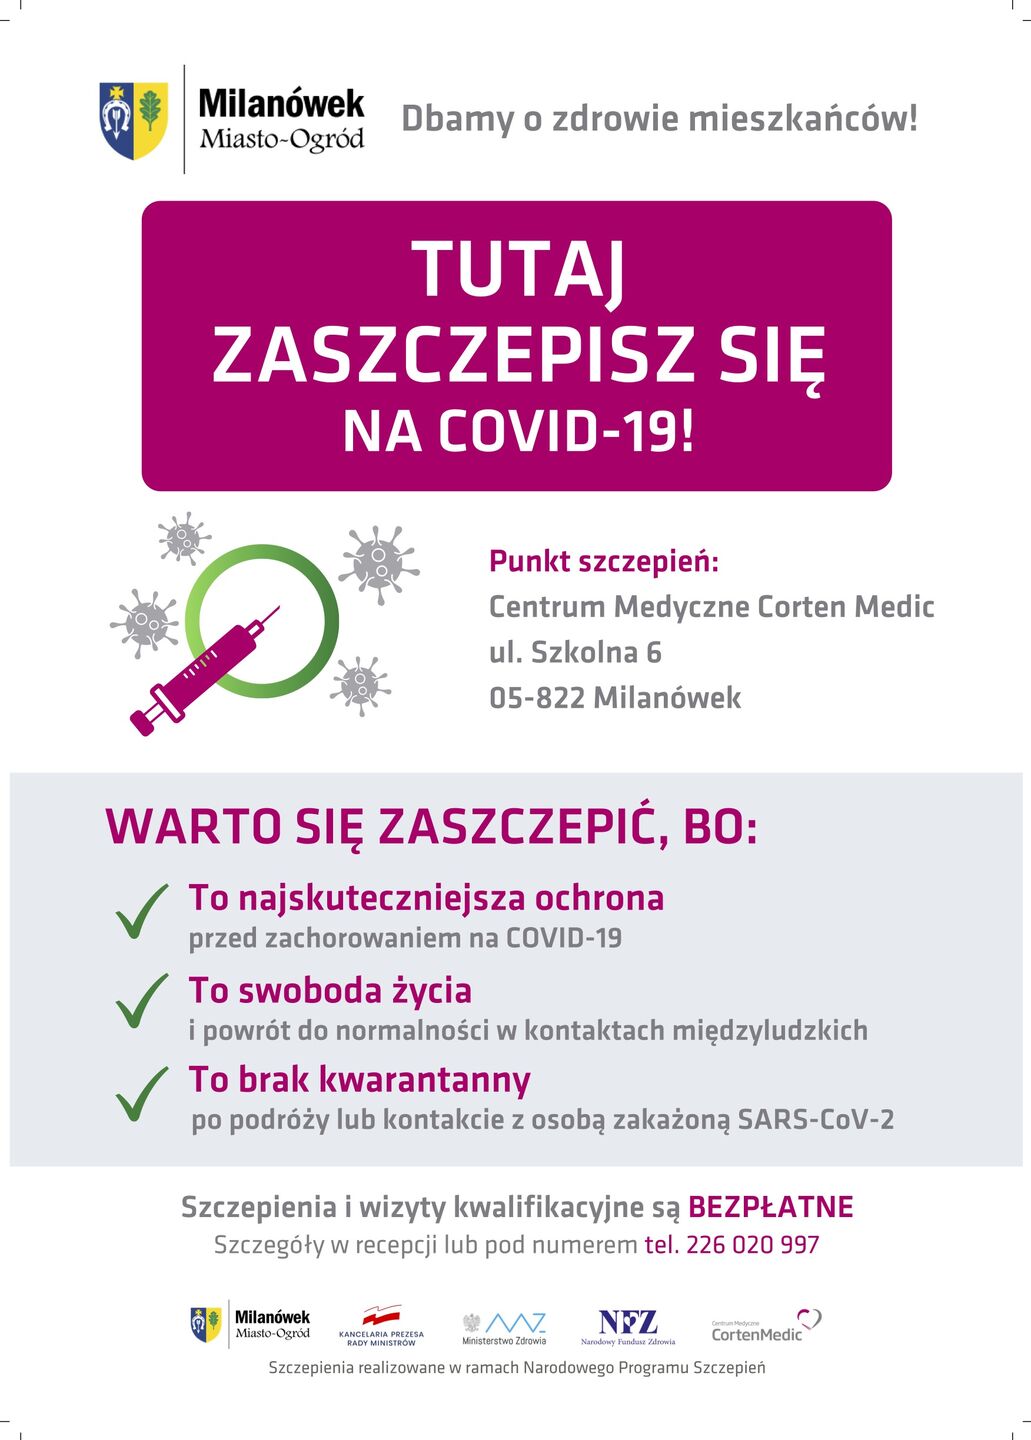 Szczepienia na covid-19 w Milanówku - plakat informacyjny